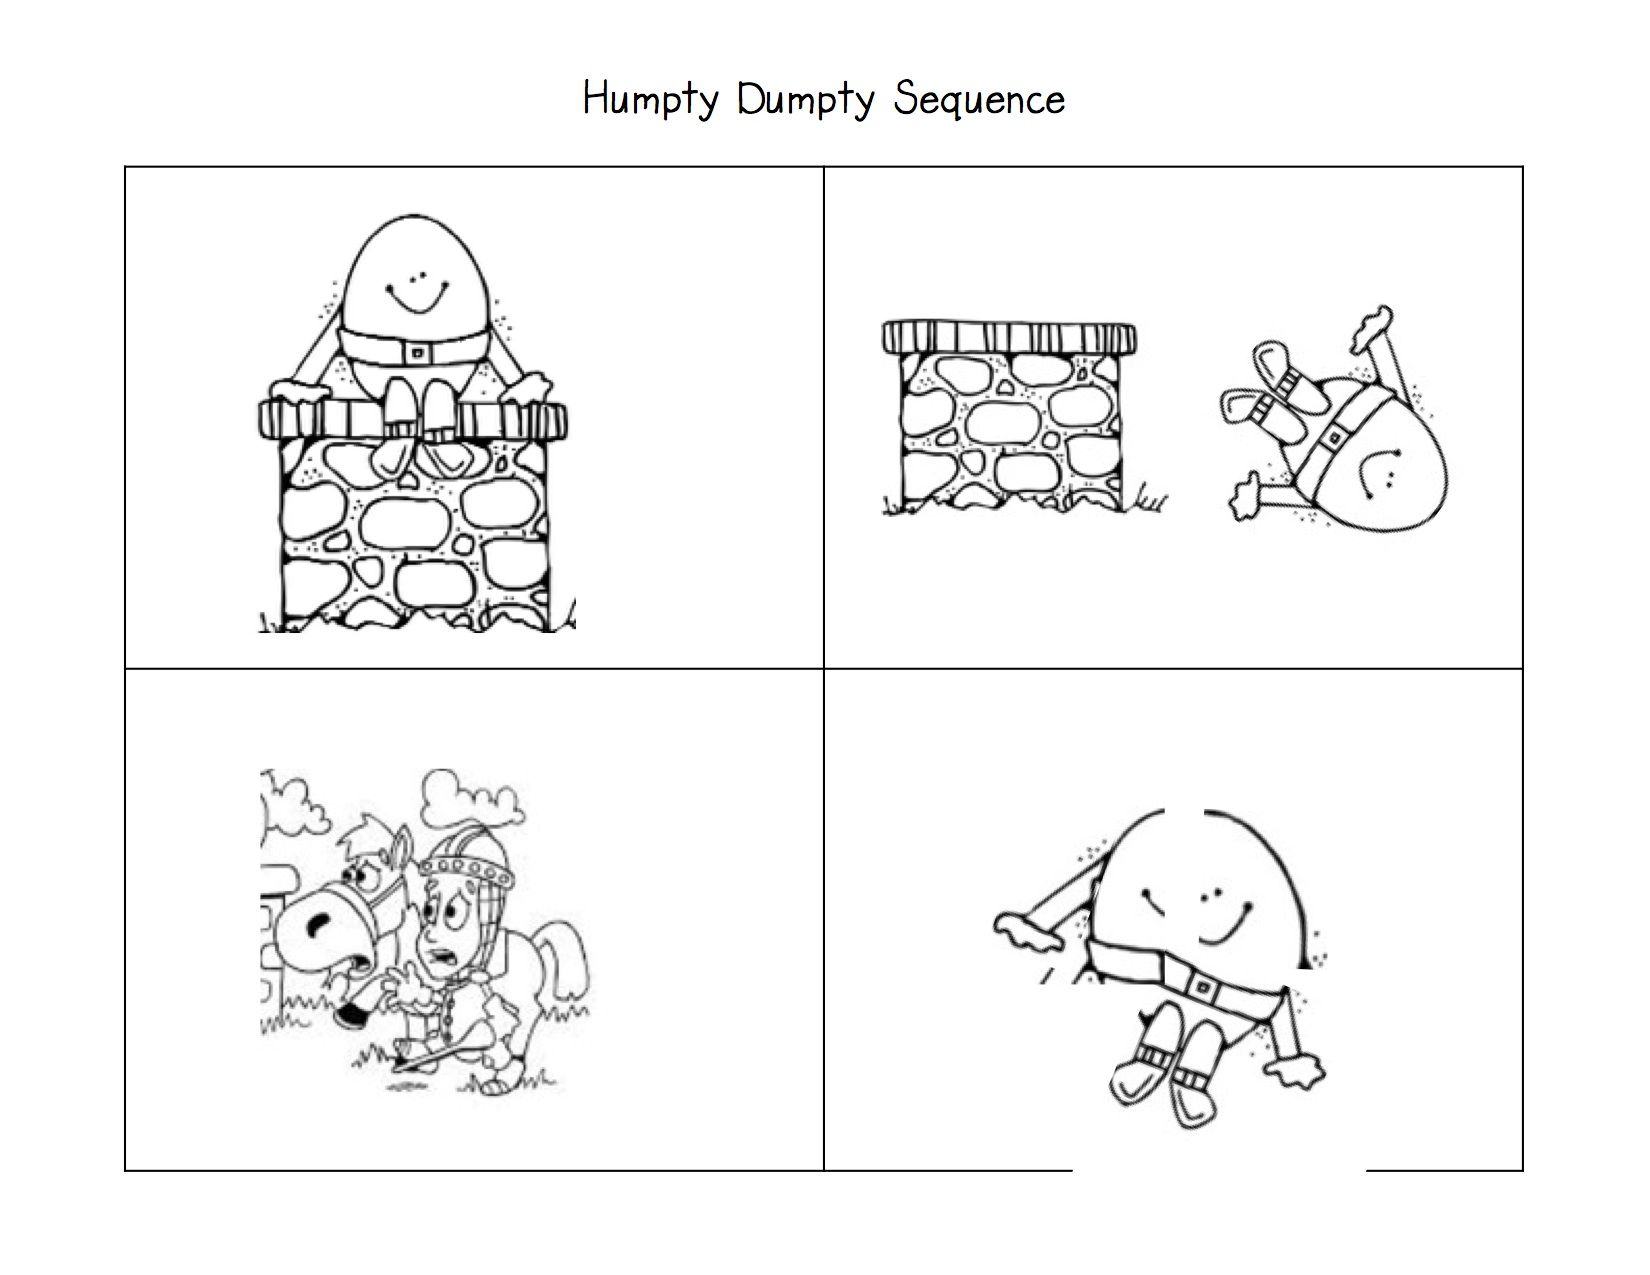 More Fun With Nursery Rhymes! | Literacy: Nursery Rhymes | Nursery - Printable Humpty Dumpty Puzzle